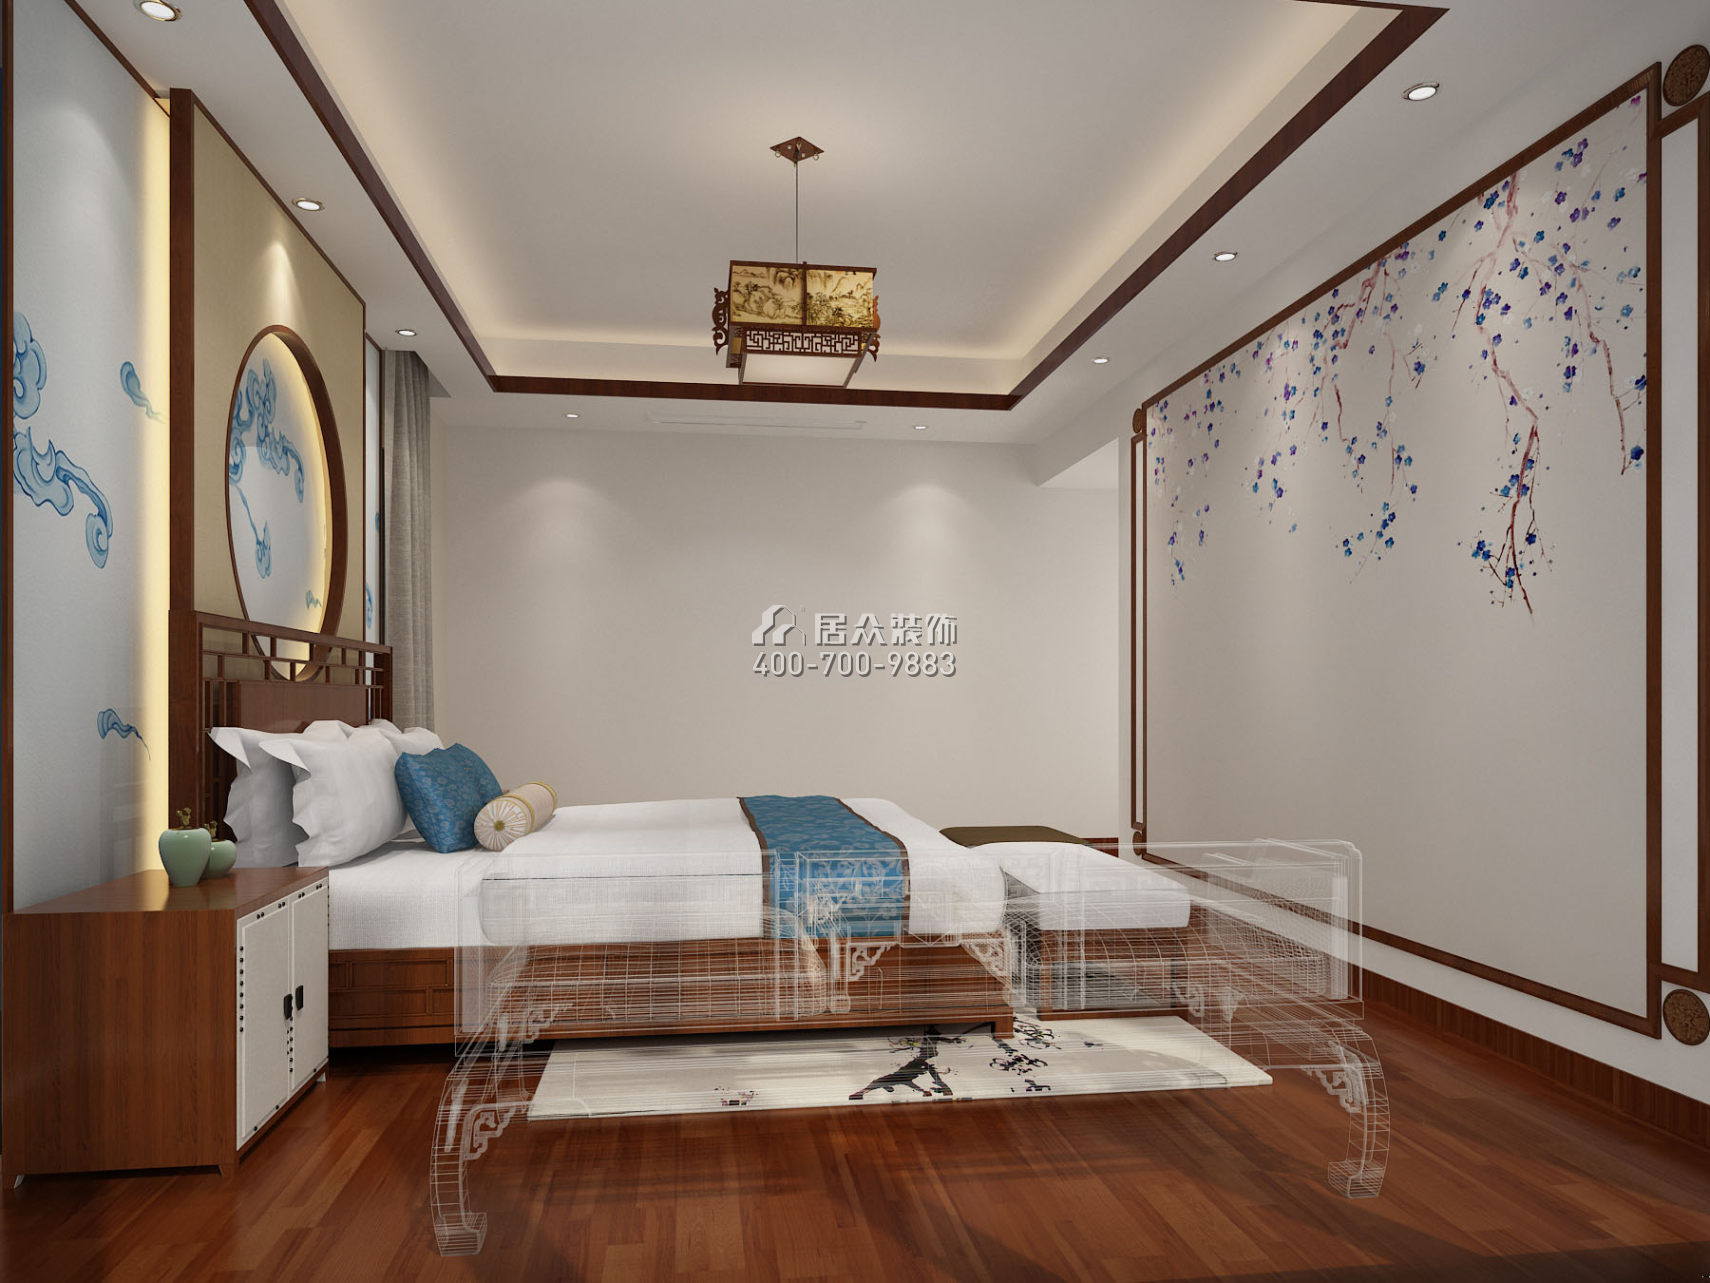 菩提园298平方米中式风格平层户型卧室装修效果图